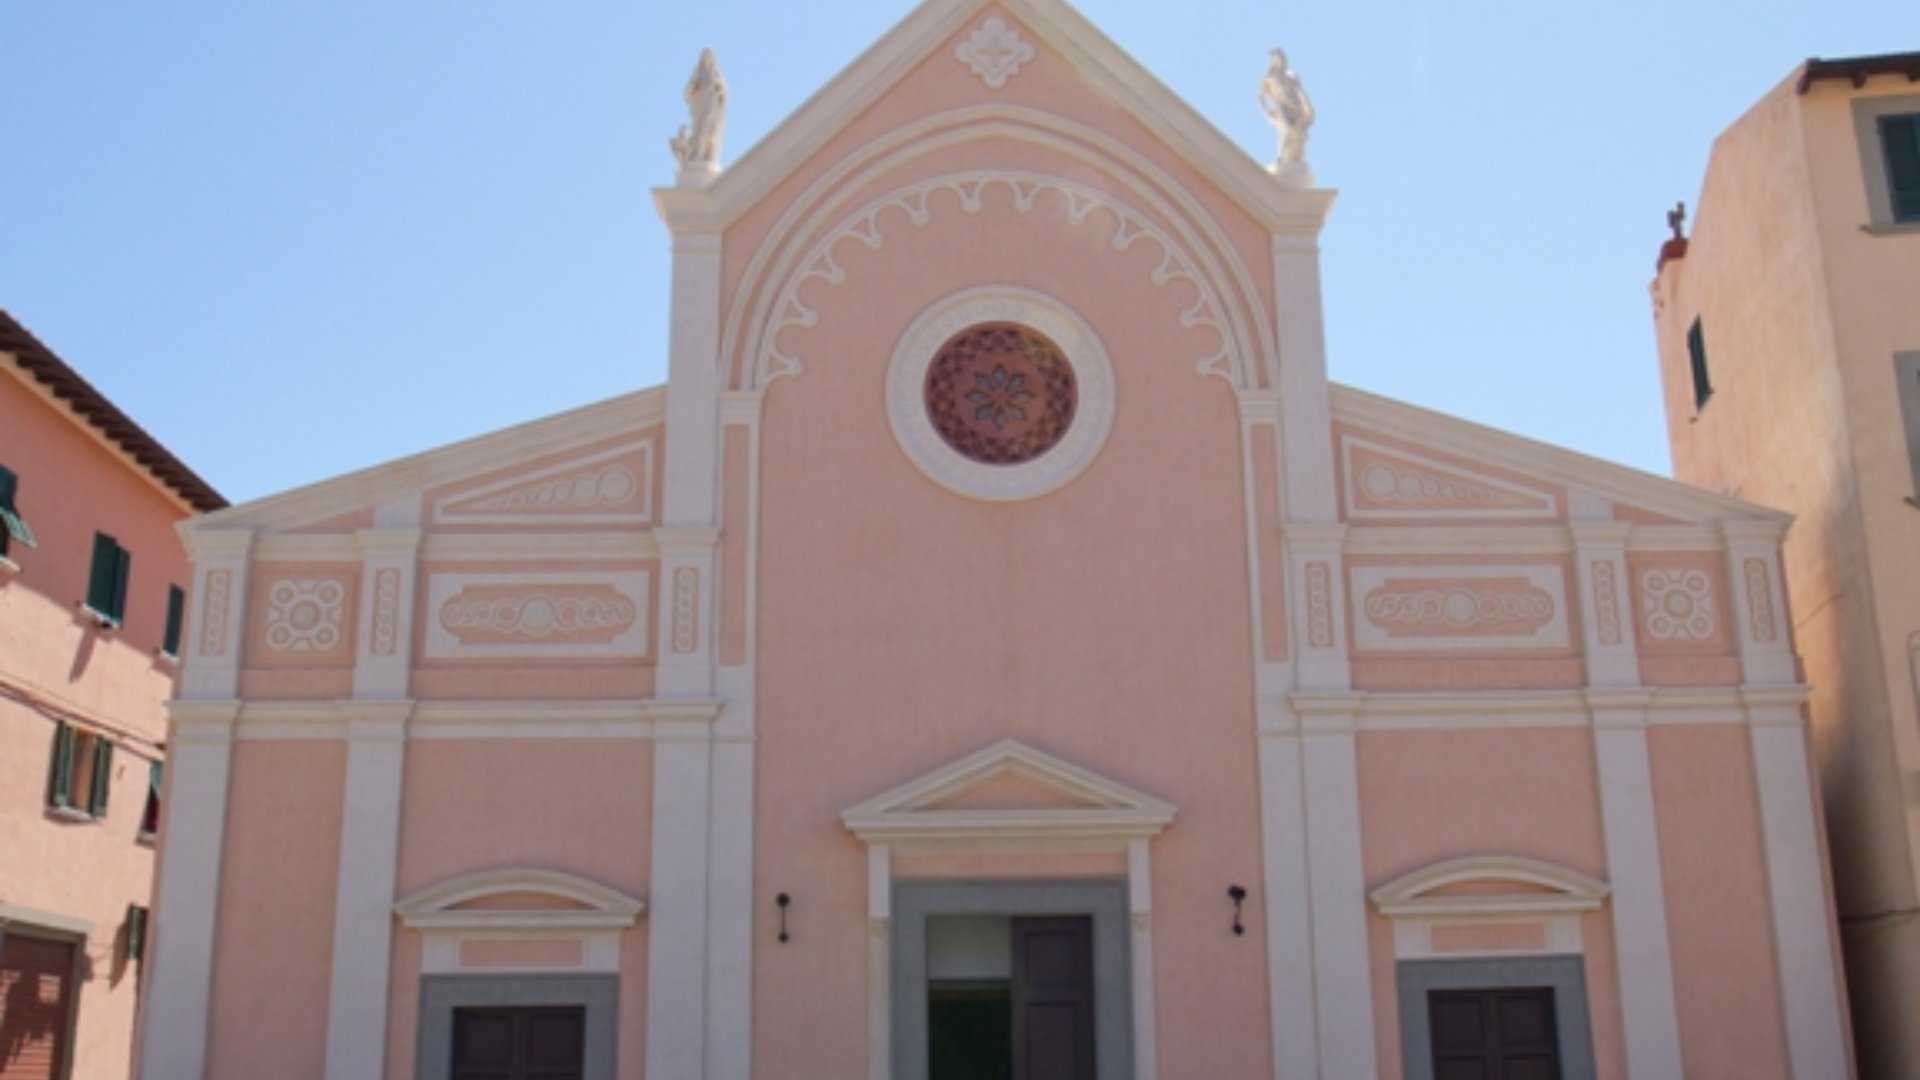 Portoferraio, the Dome